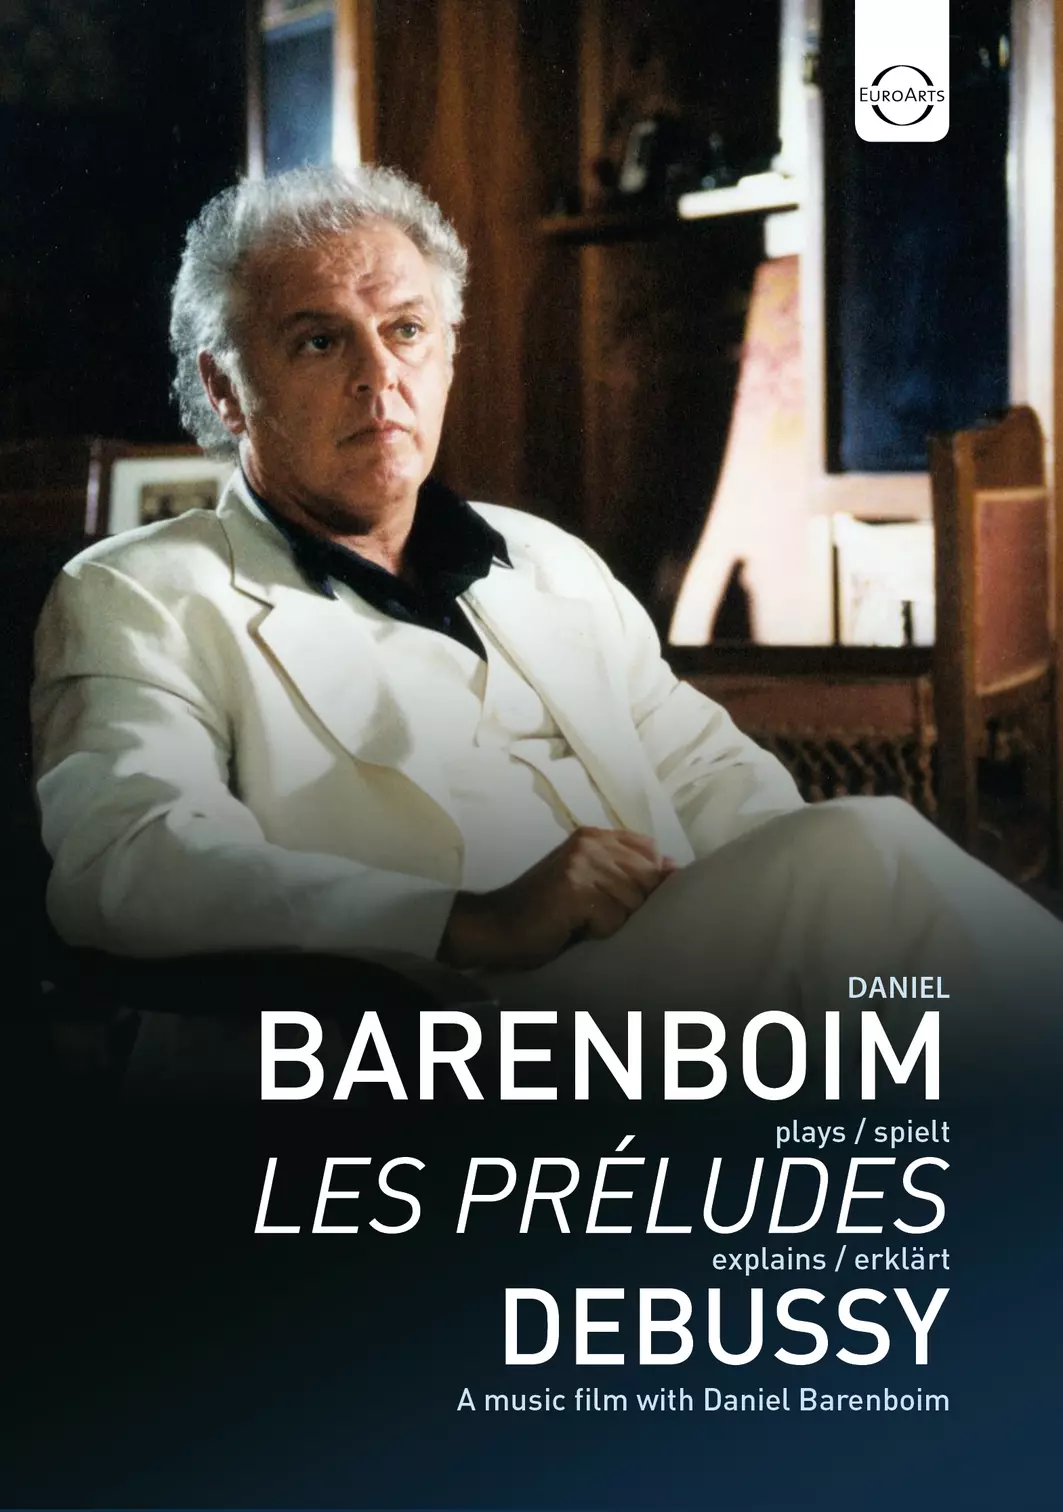 Daniel Barenboim plays and explains Les Préludes